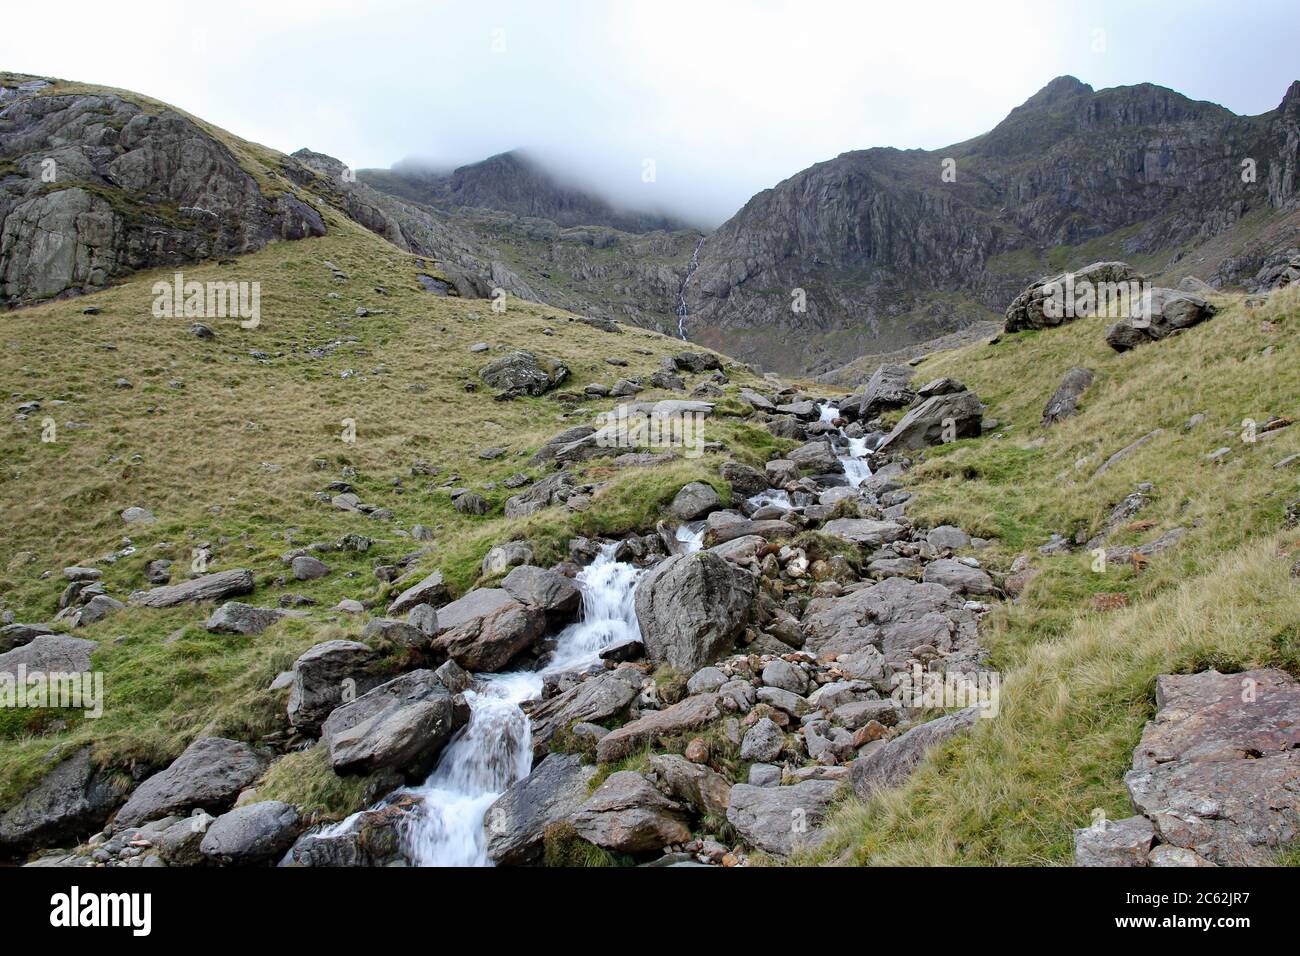 Le ruisseau de montagne mène vers Clogwyn avec Snowdon entouré de nuages, parc national de Snowdonia, au nord du pays de Galles Banque D'Images